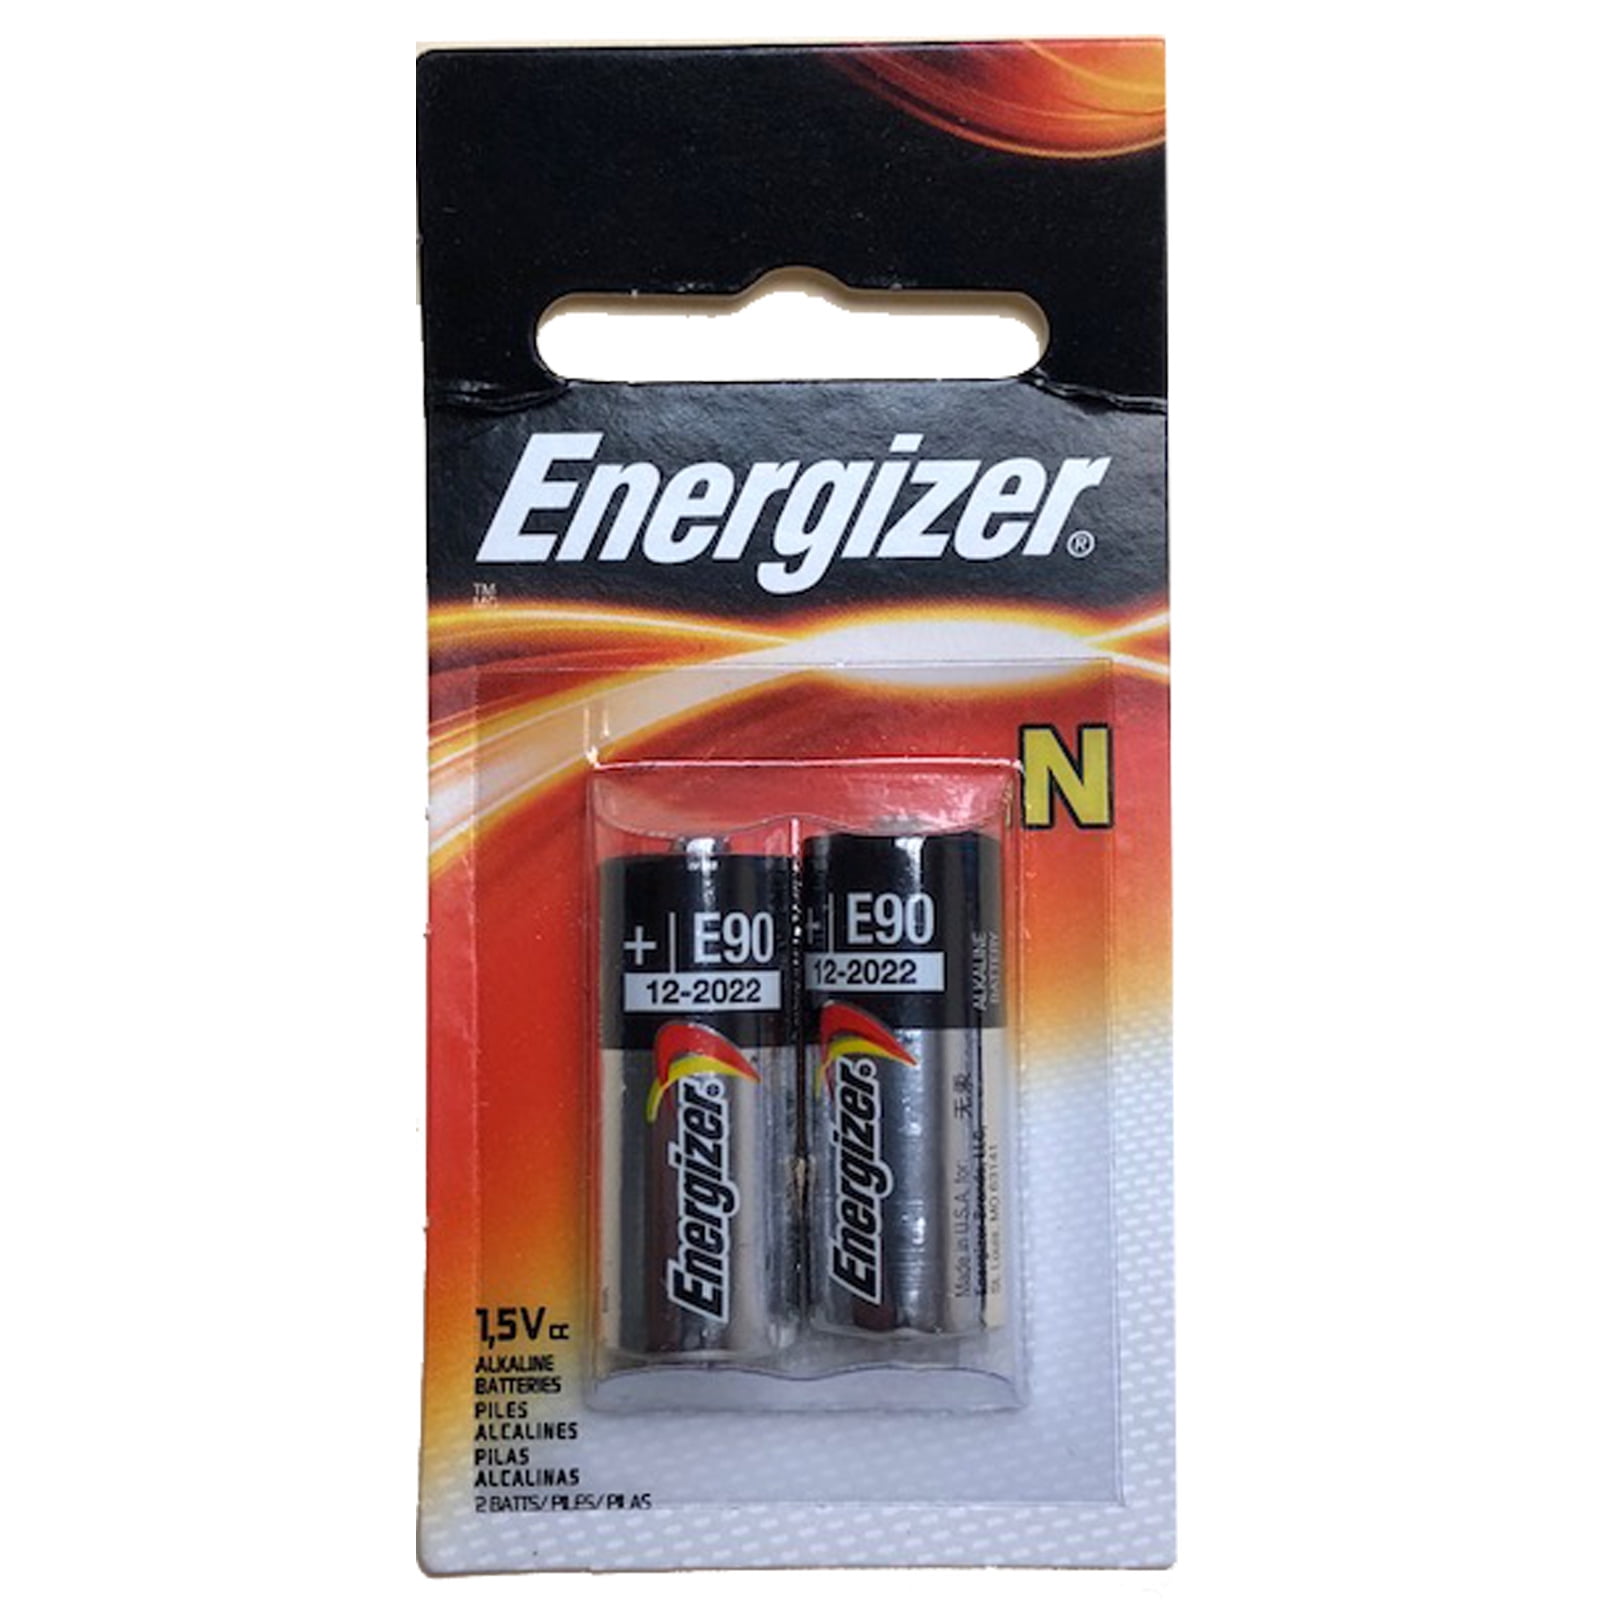 2pk Energizer E90 N 1.5V Alkaline Batteries replaces LR1, LR1G, Lr1sg, MN9100